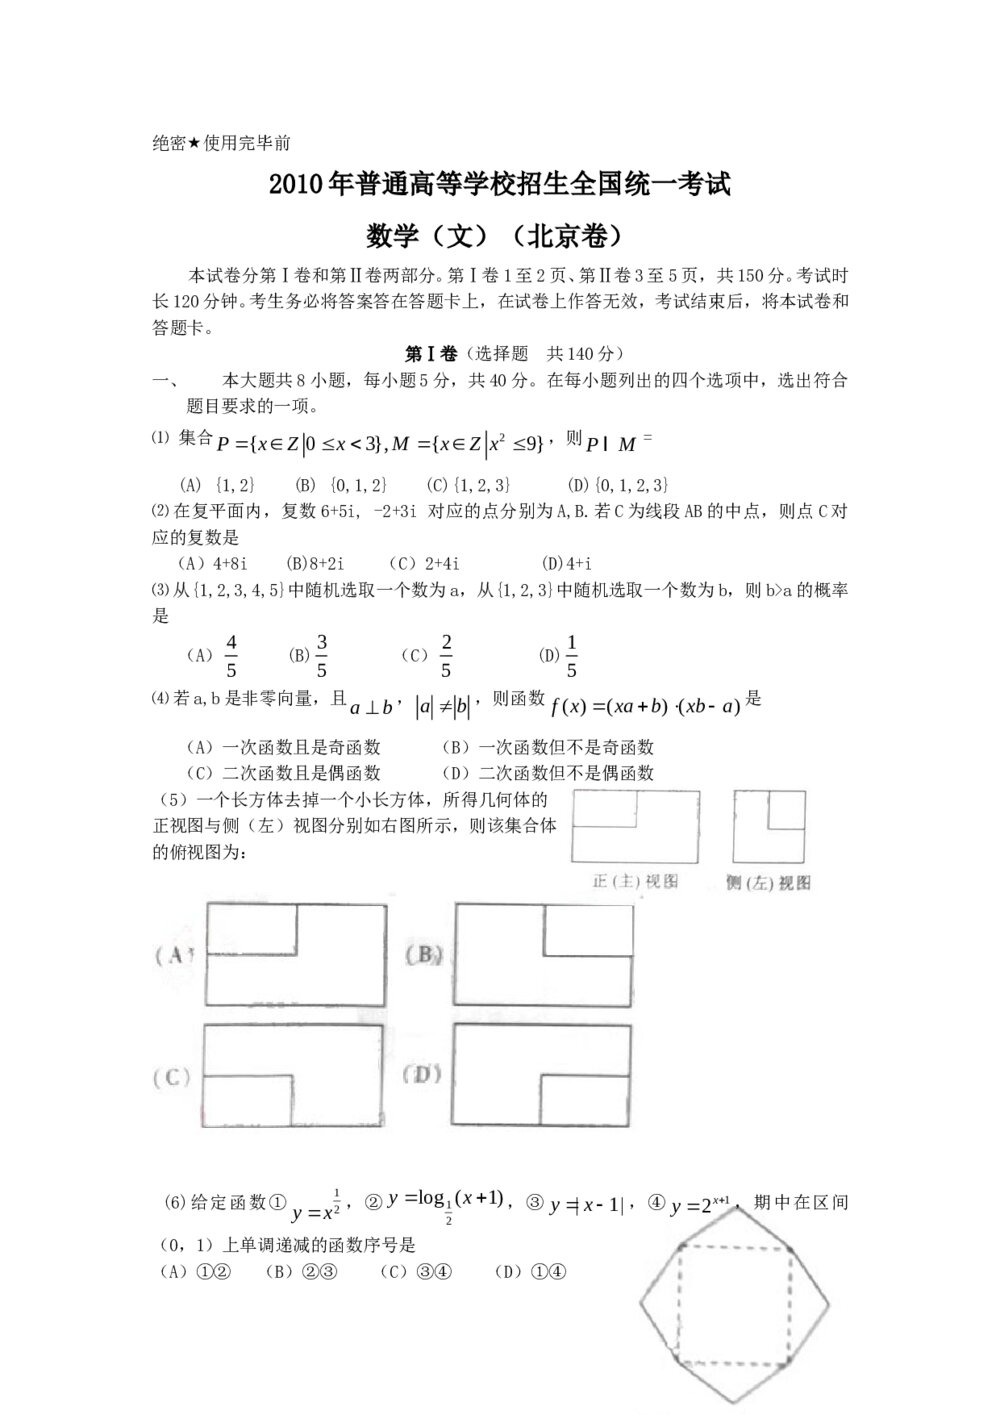 高考试题(北京卷)--数学文科+(参考答案)